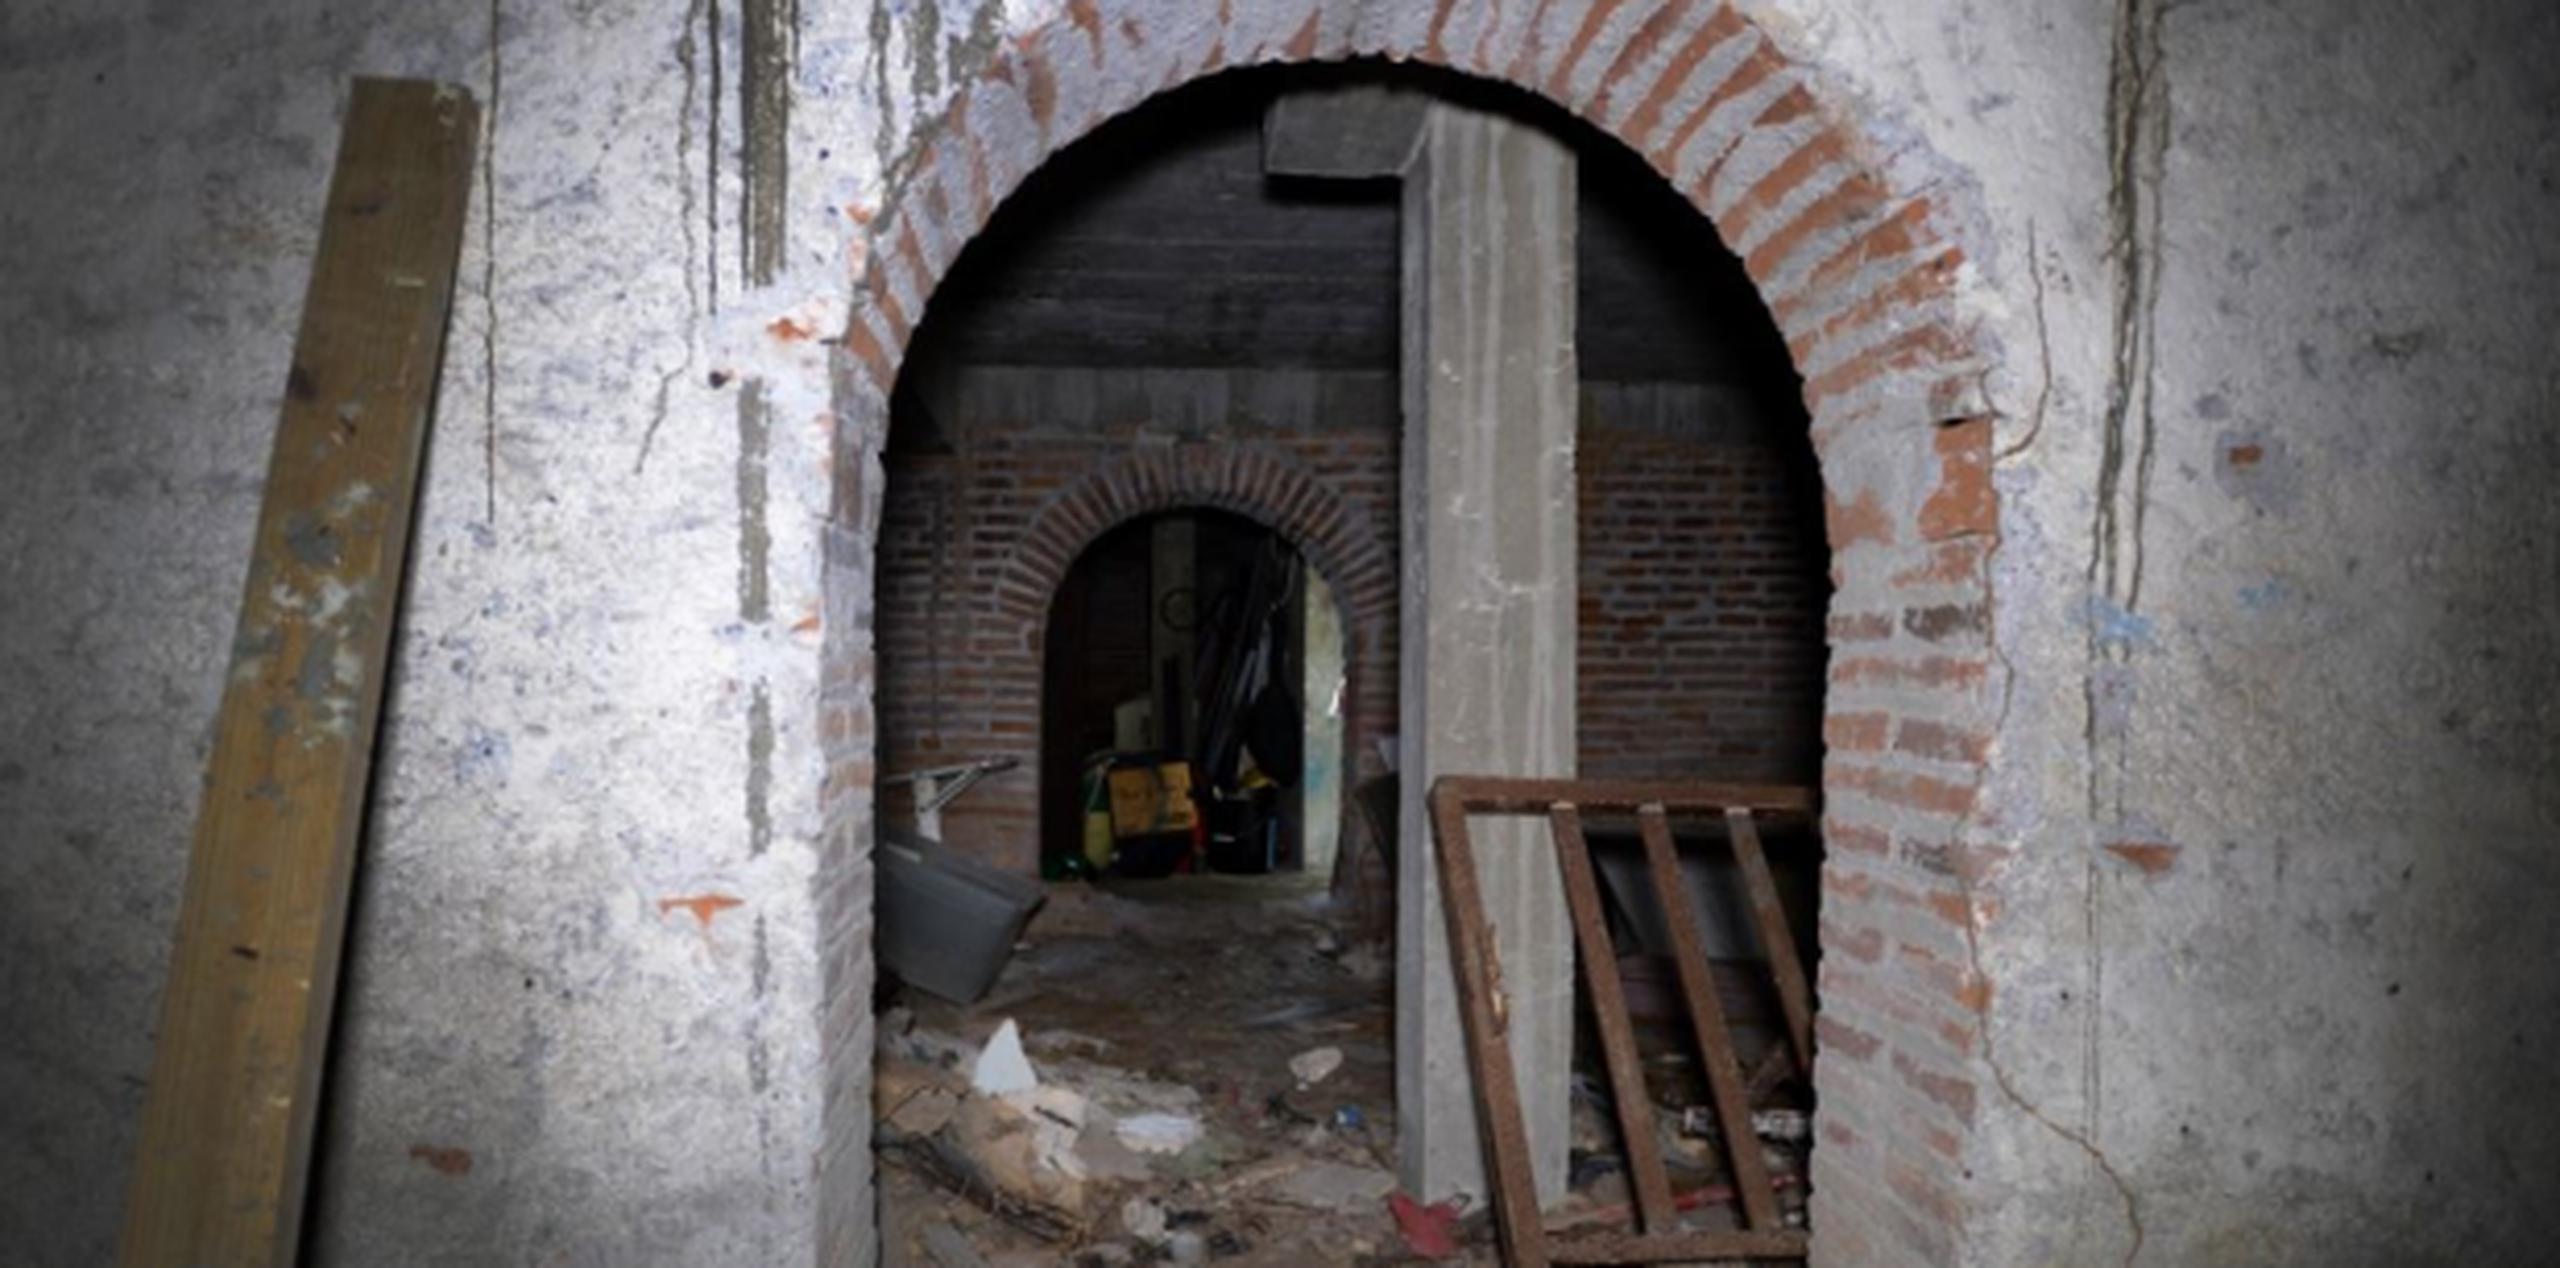 El legislador estadista aseguró que los túneles pueden servir como atractivo turístico y que por tal razón deben ser rehabilitados. (Archivo)